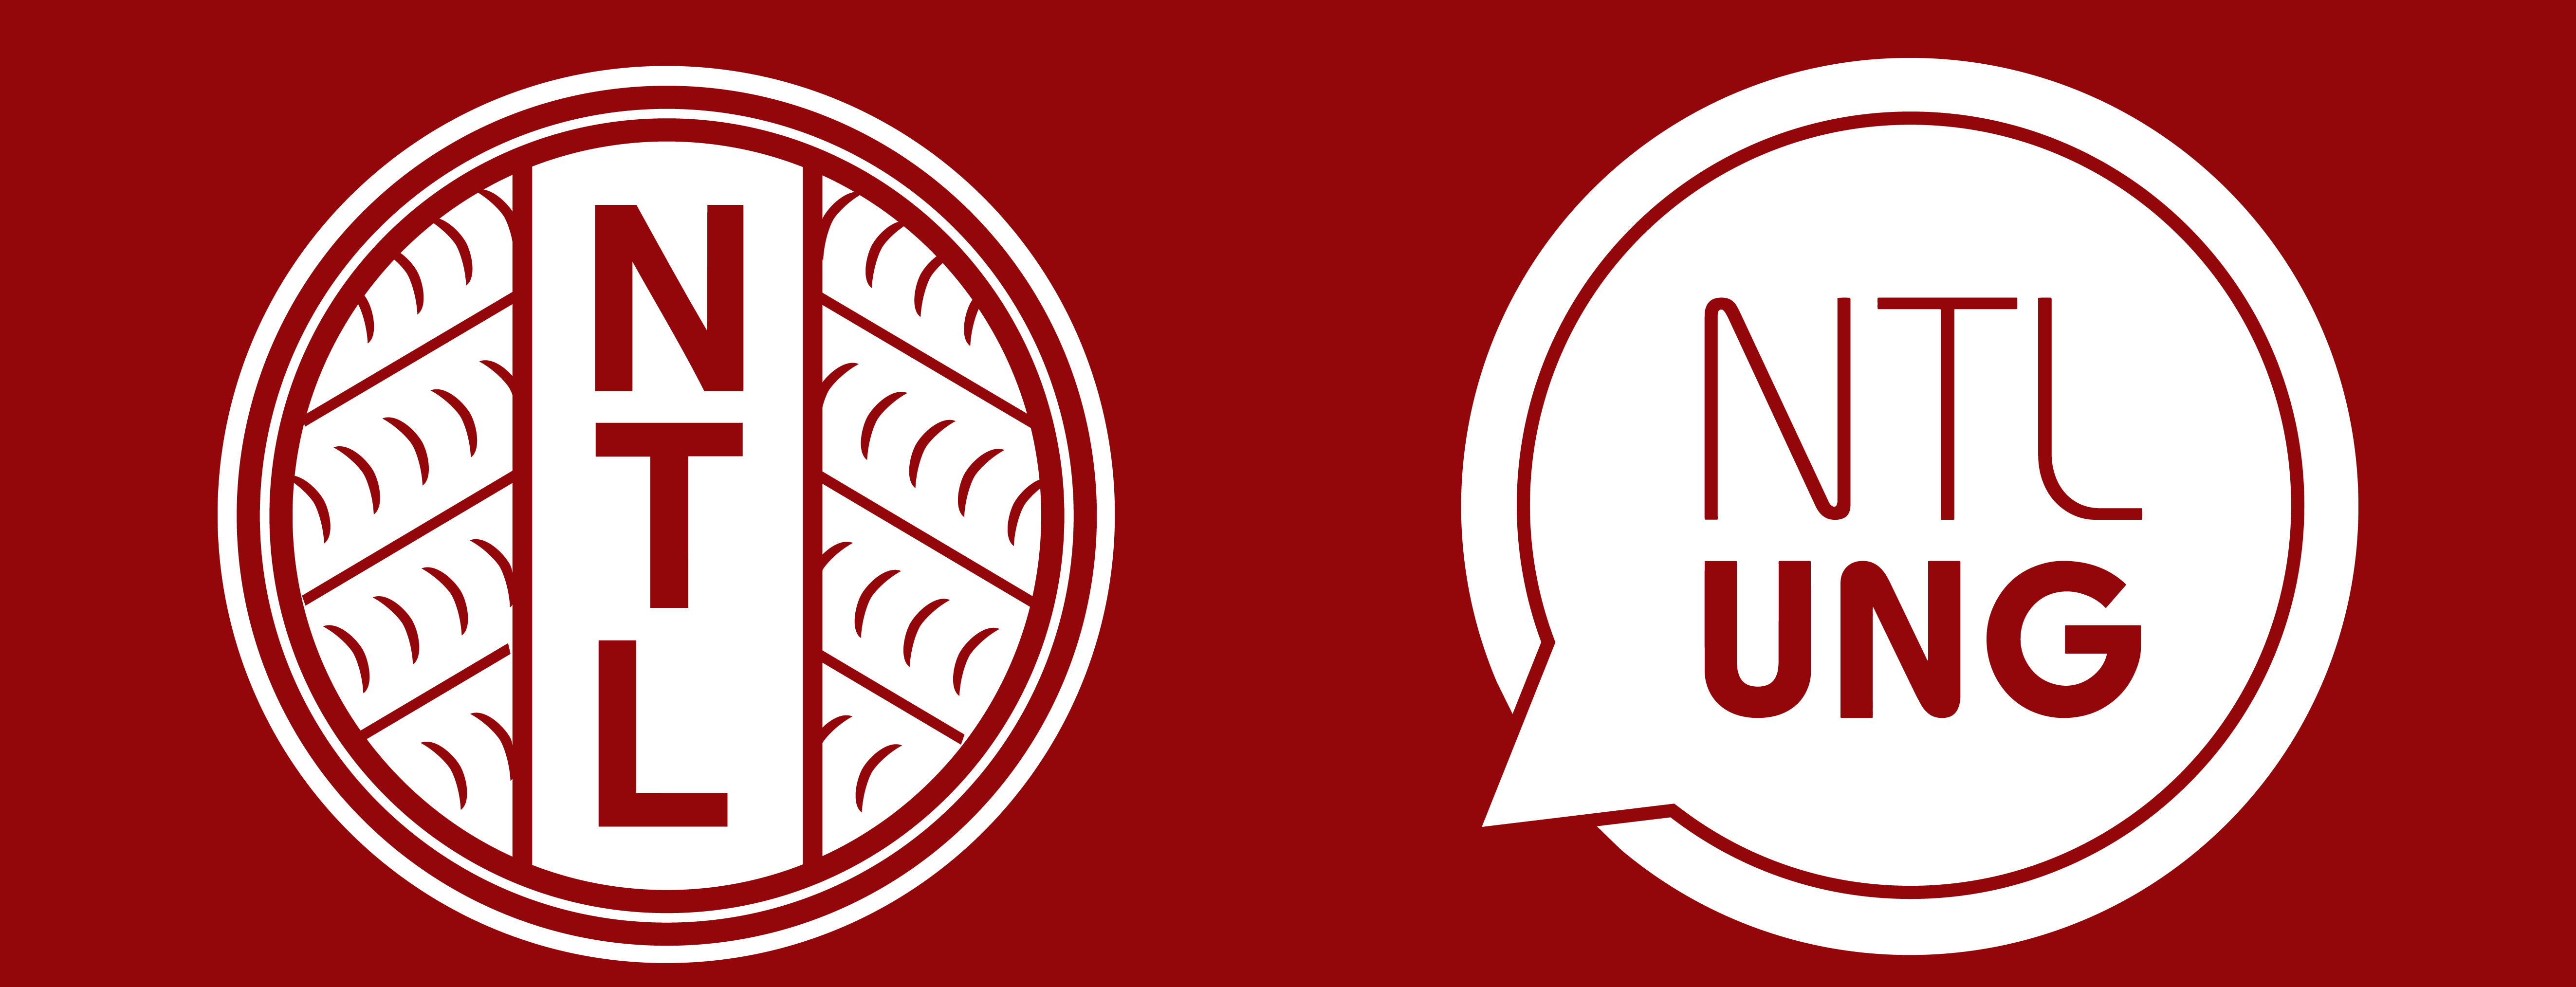 NTL- og NTL-ung-logoer